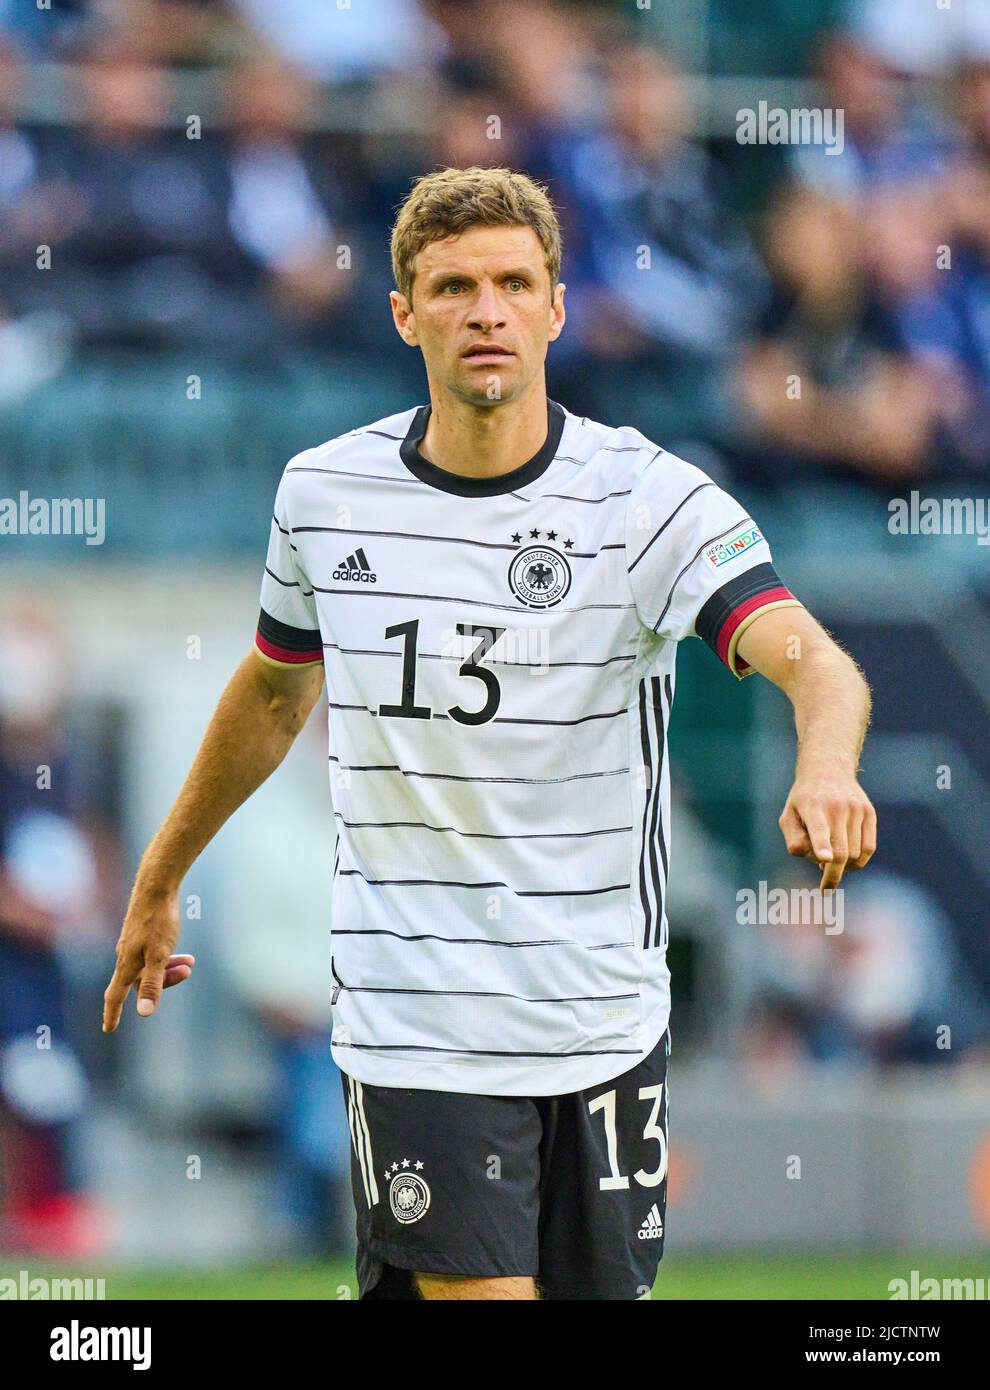 Thomas Müller, DFB 13 nella UEFA Nations League 2022 partita GERMANIA - ITALIA 5-2 nella stagione 2022/2023 giugno 14, 2022 a Mönchengladbach, Germania. © Peter Schatz / Alamy Live News Foto Stock